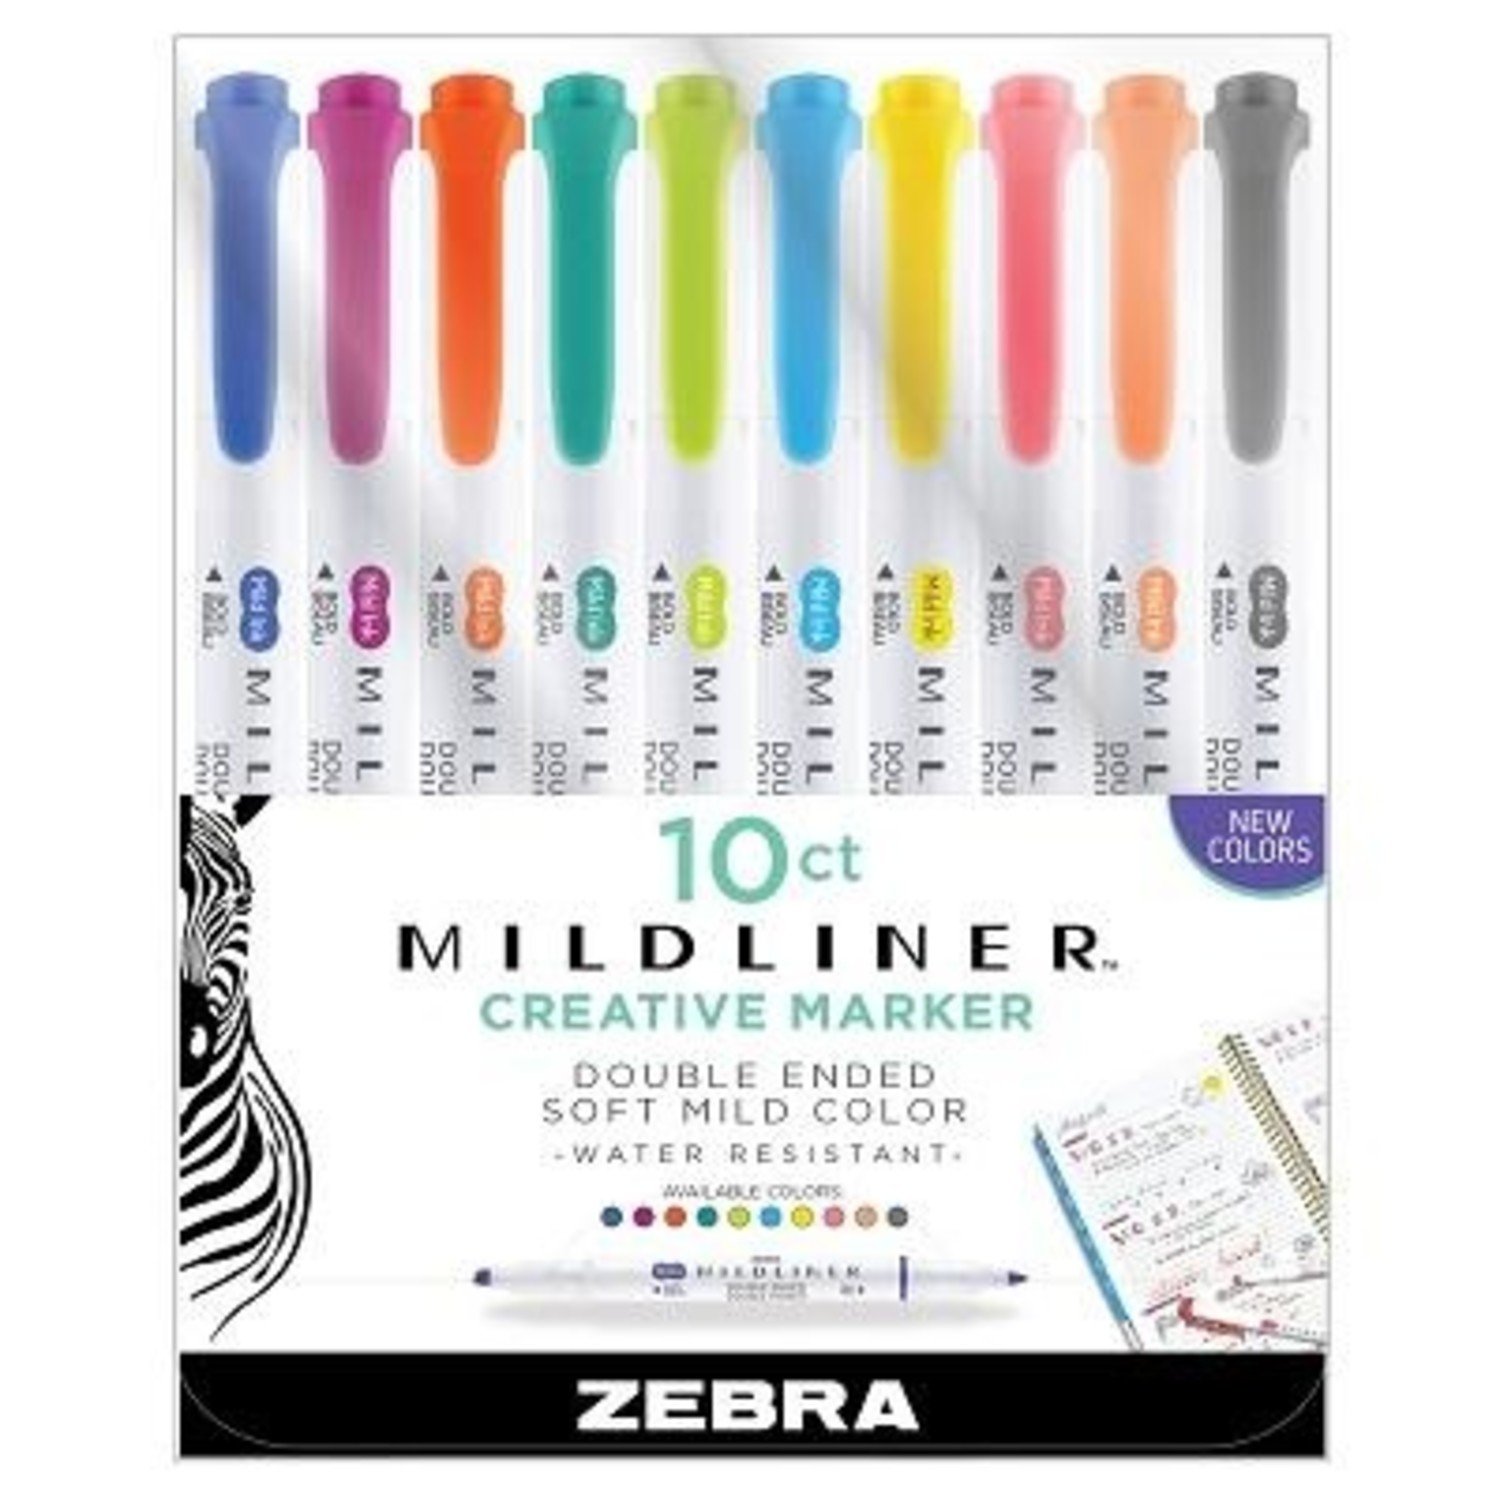 Mildliner Highlighter Pen - Wonder Fair Home Shopping Network